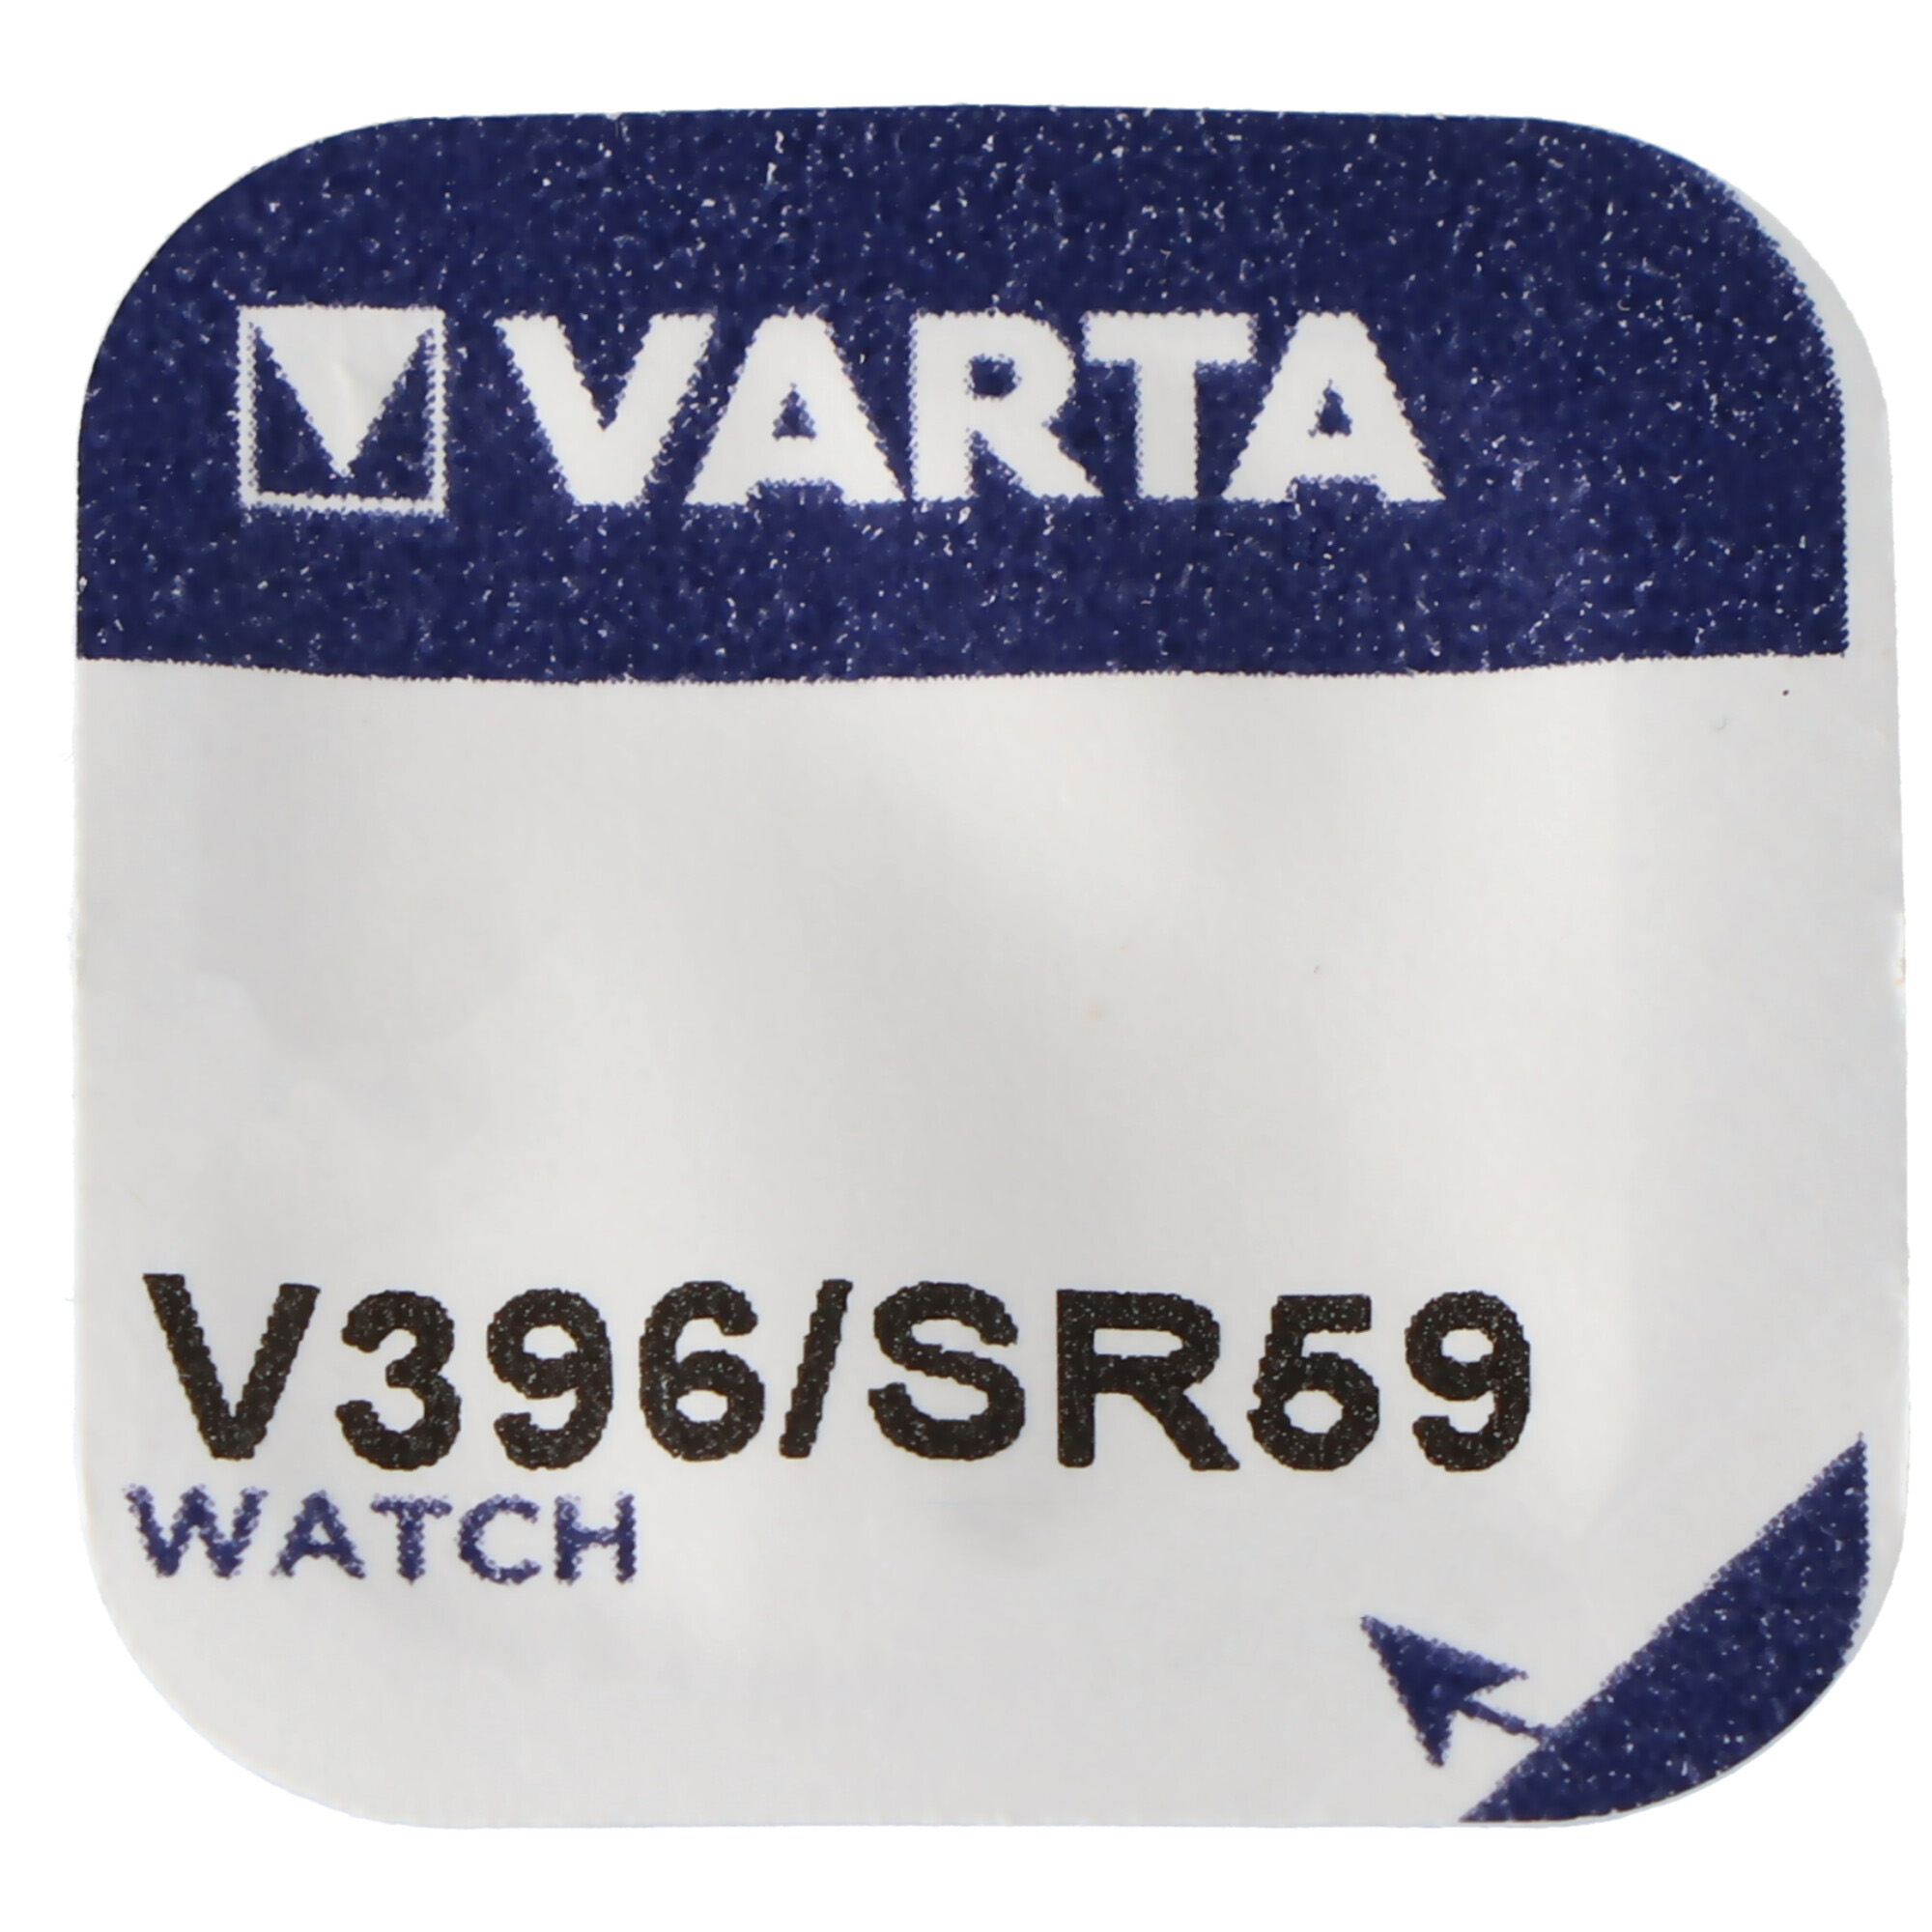 396 Varta Knopfzelle V396, SR59, SR726W Knopfzelle für Uhren etc.